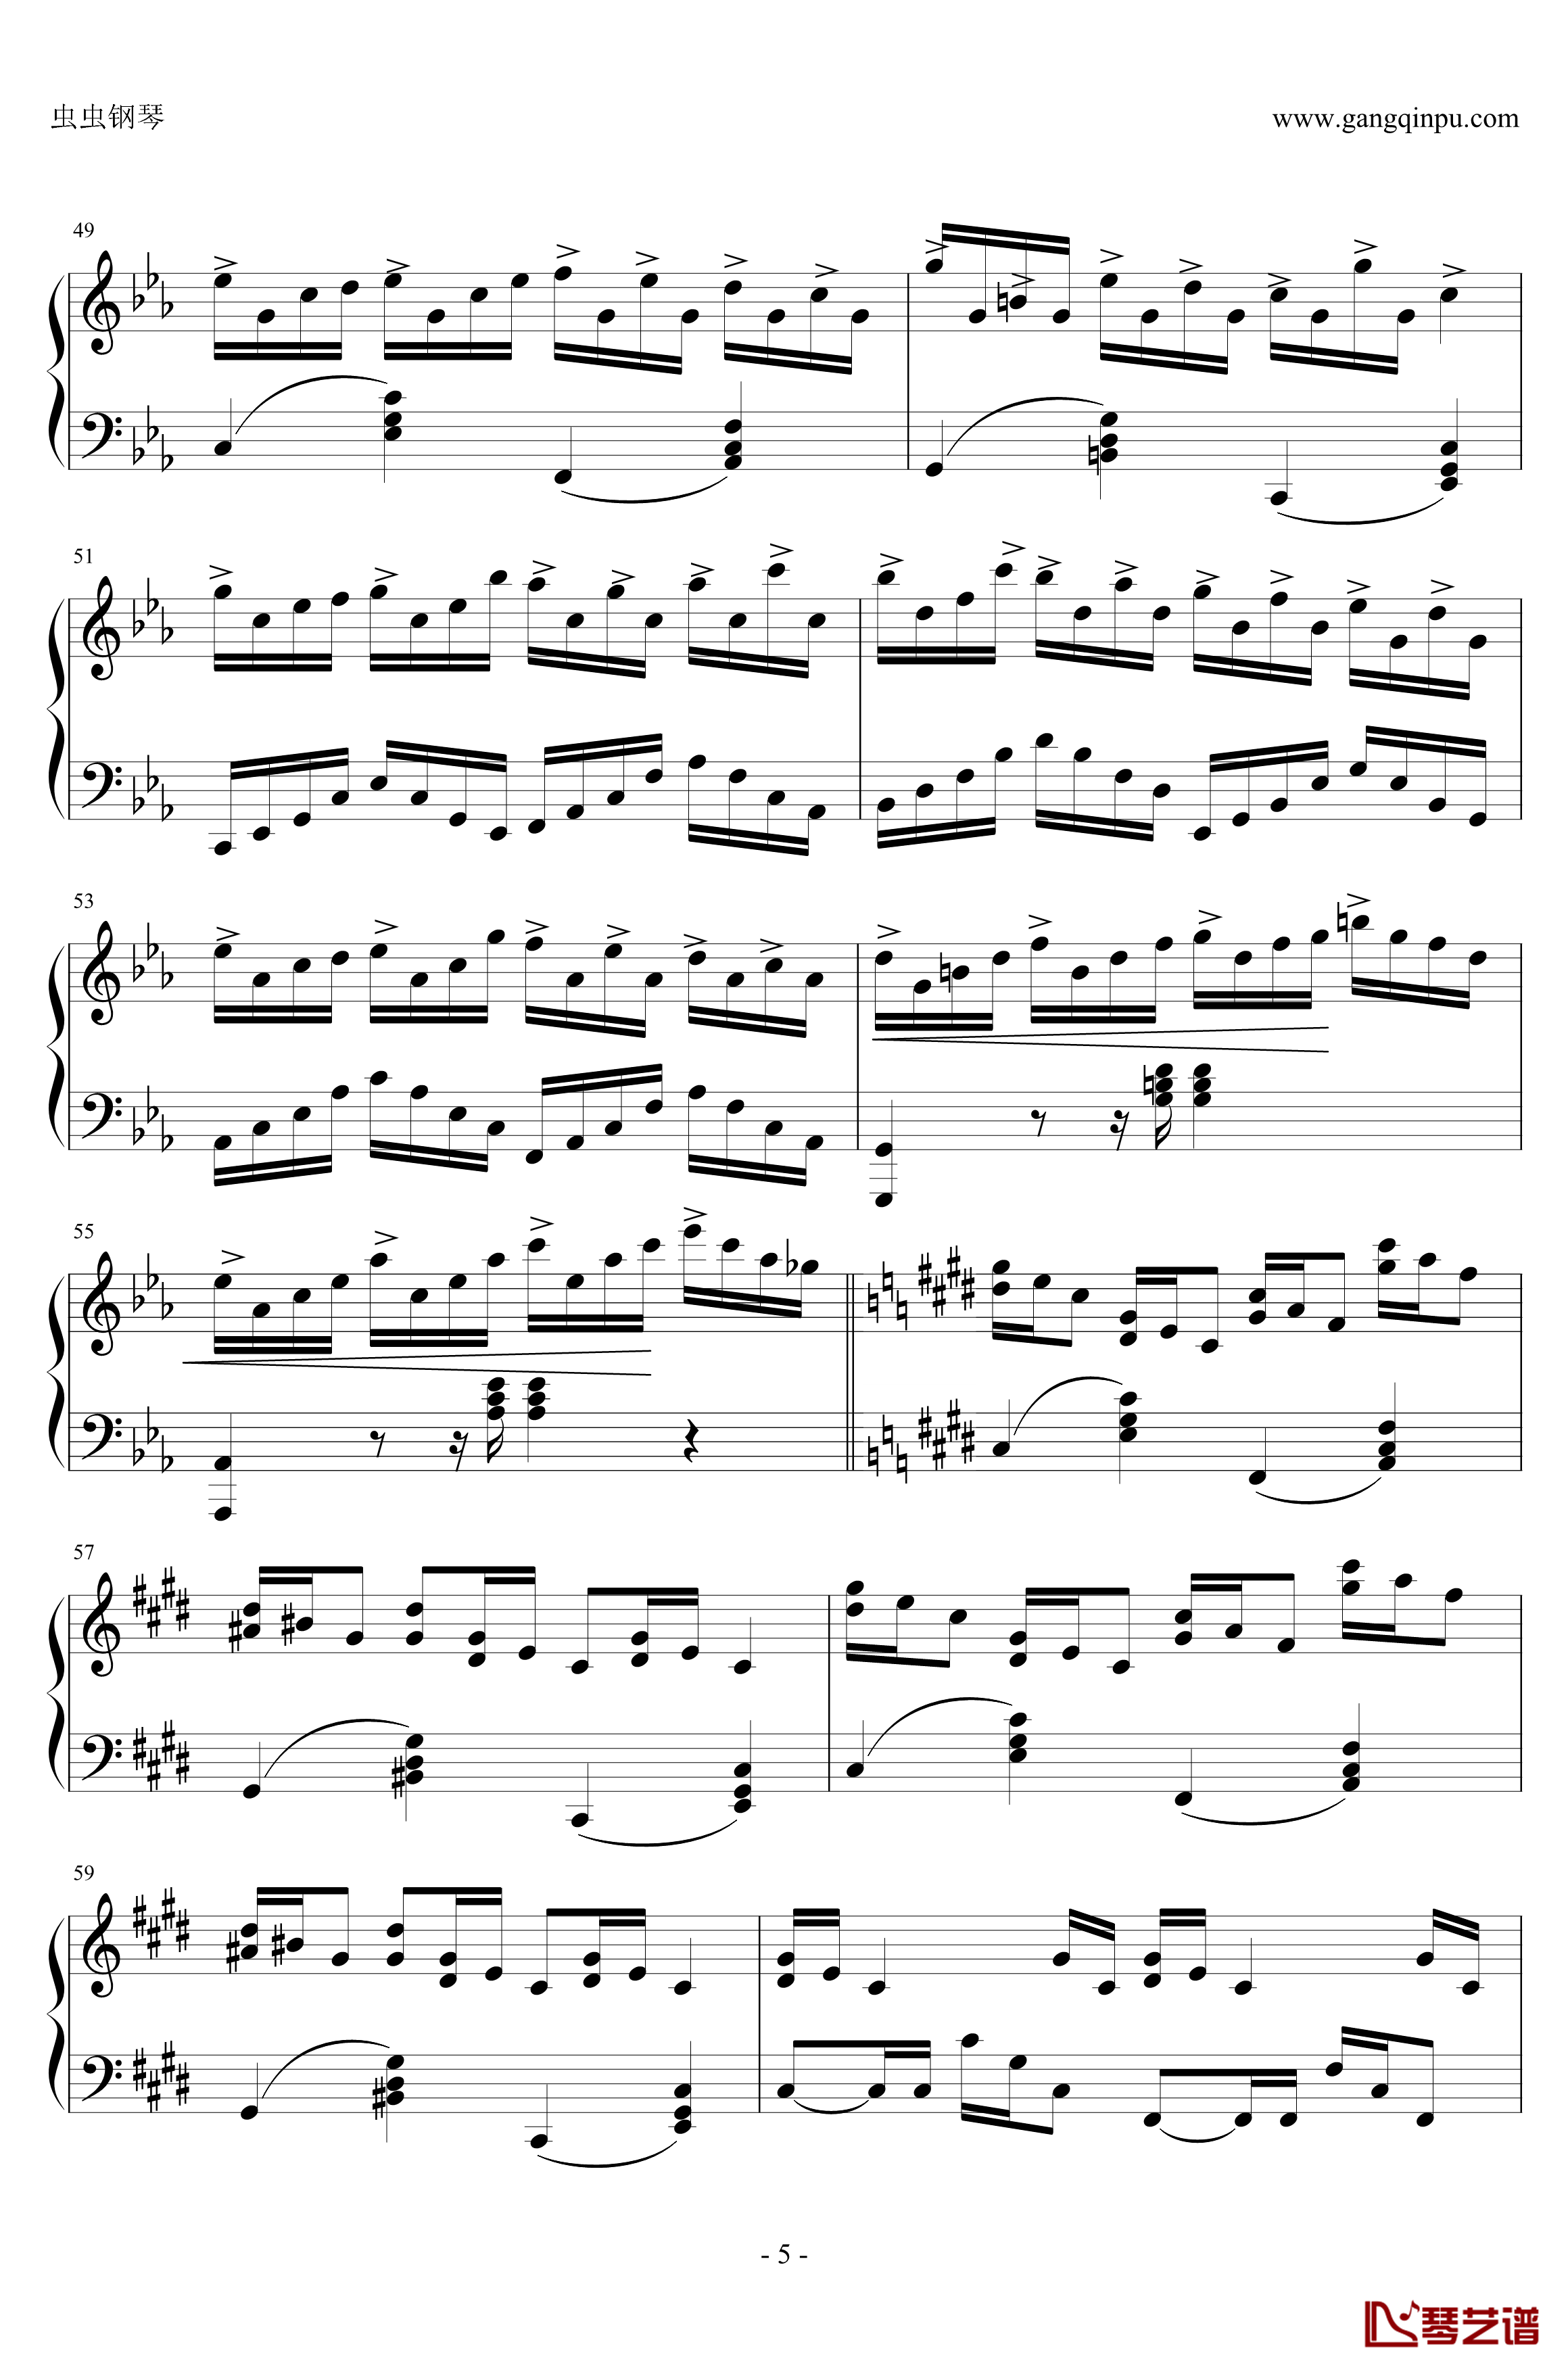 克罗地亚狂想曲钢琴谱-与原录音完全一致-马克西姆-Maksim·Mrvica5